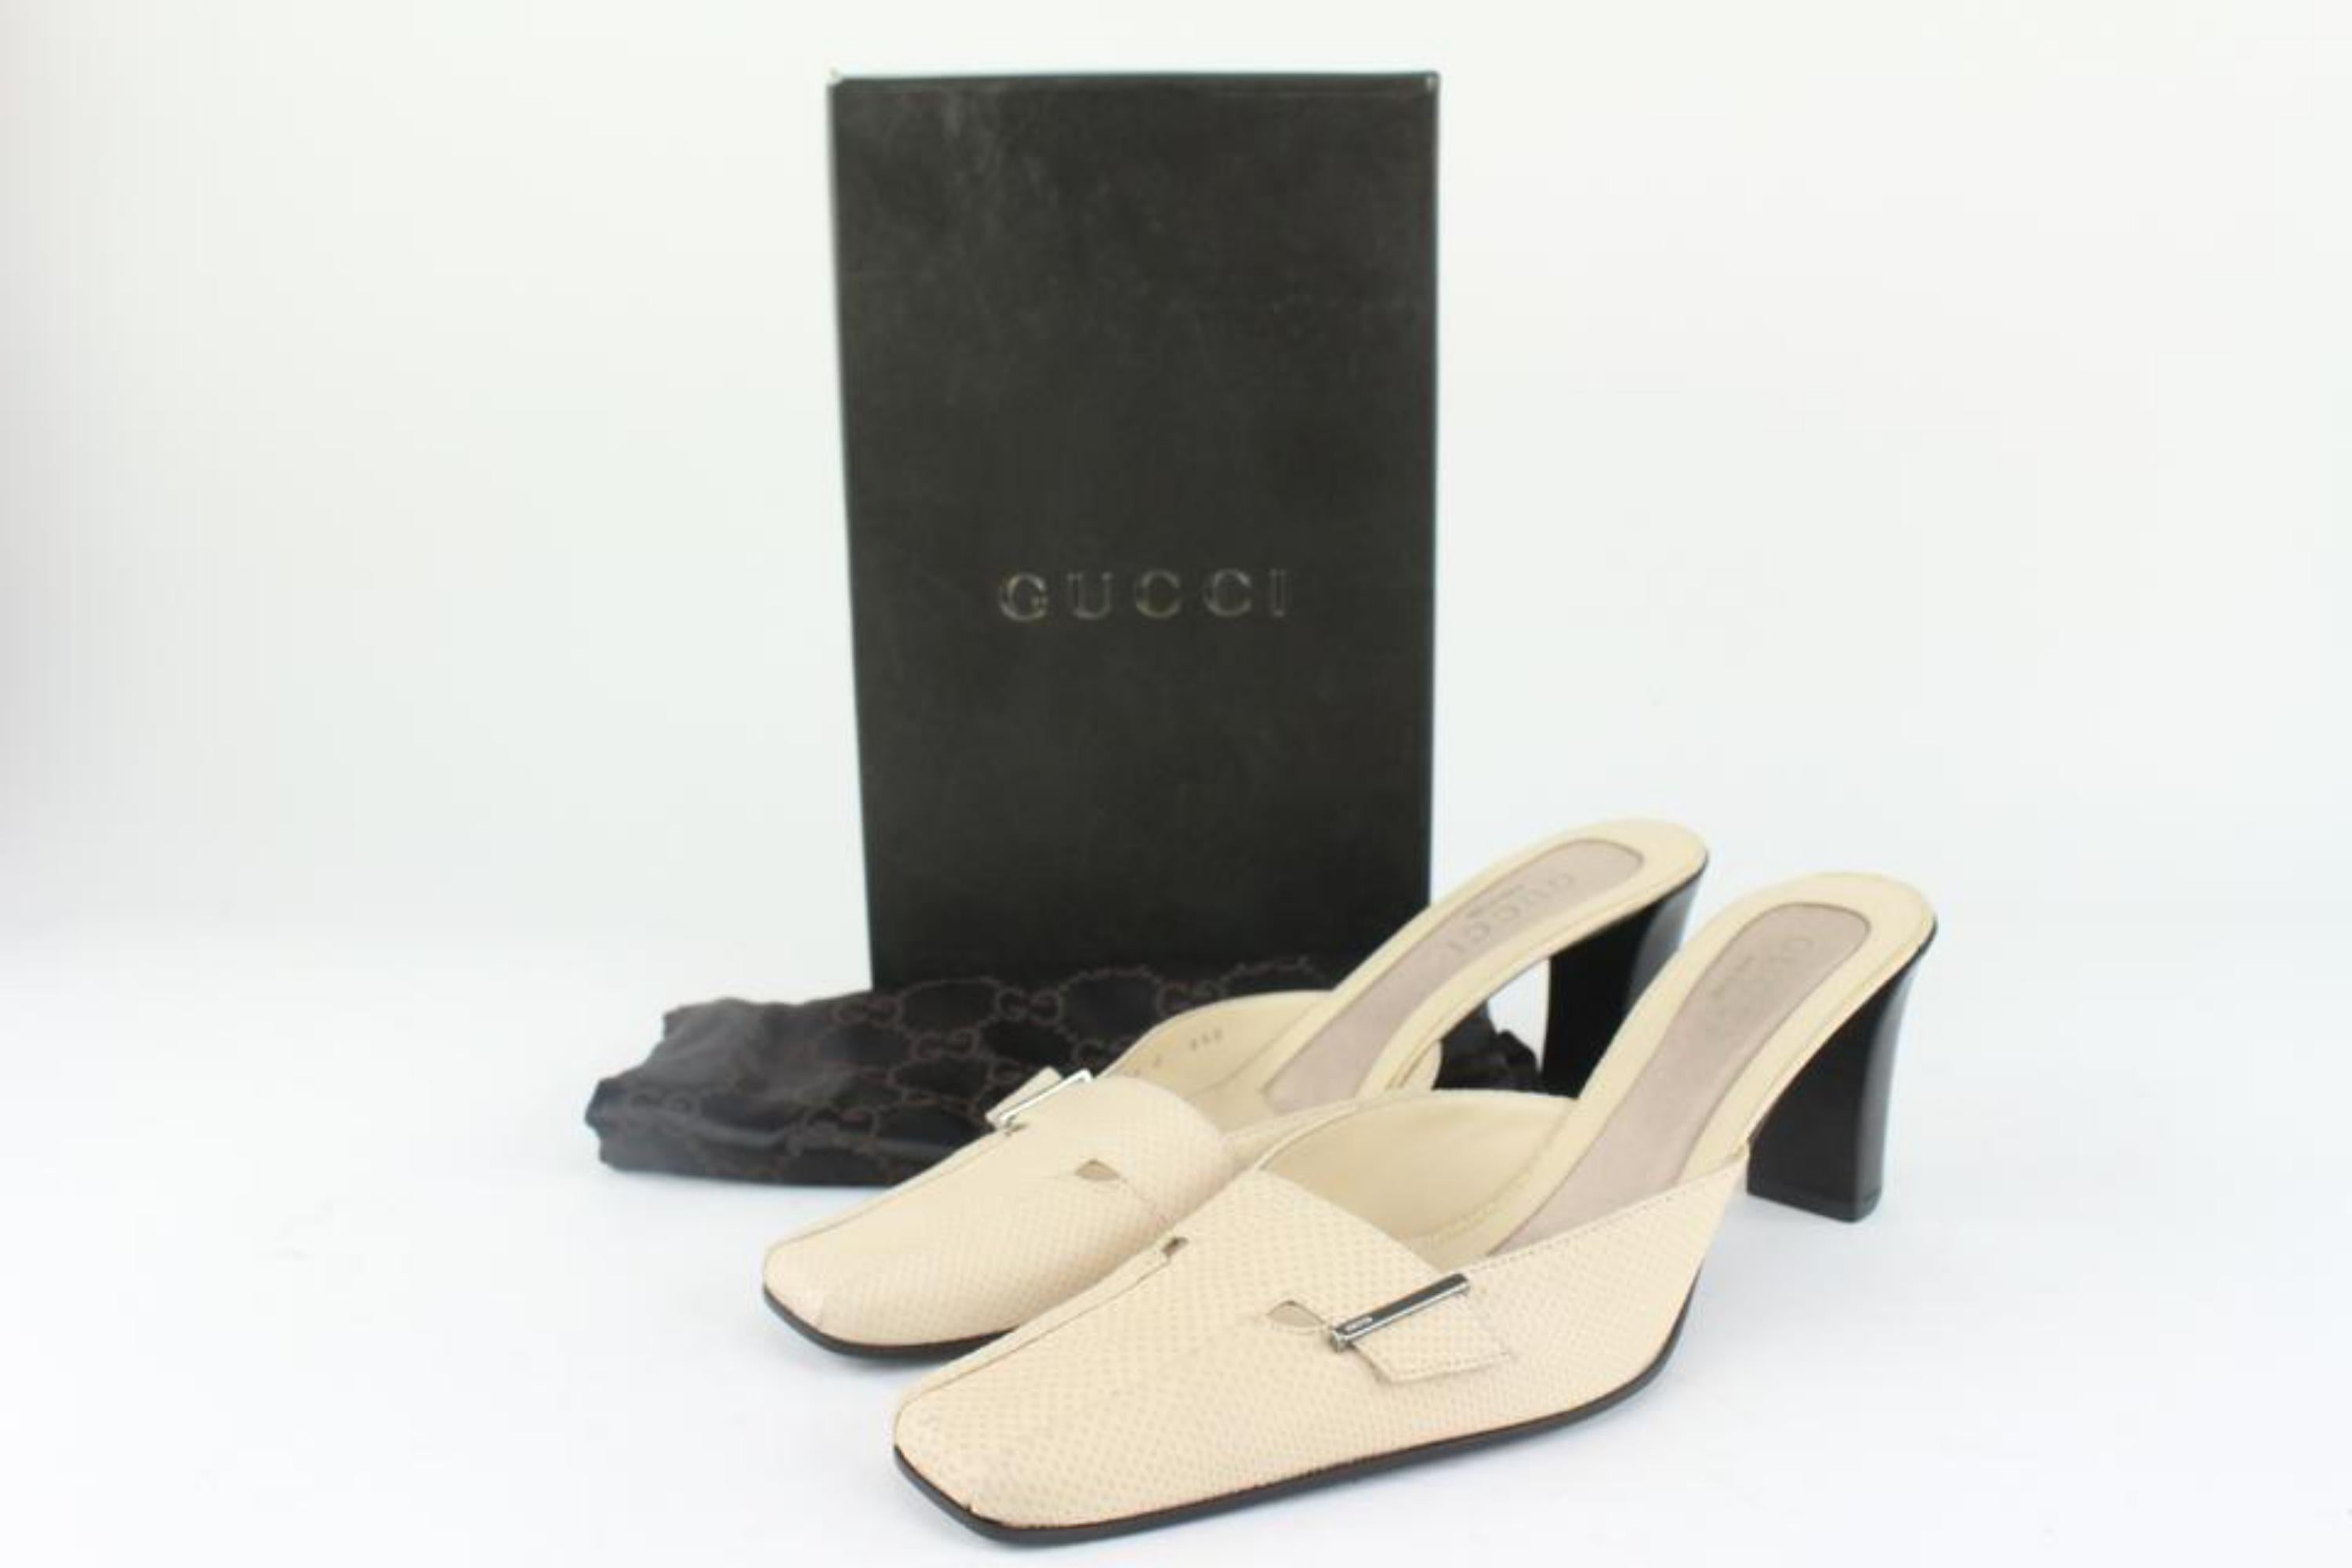 Gucci Beige Karung Snake Mule Heels 1GG1113
Date Code/Serial Number: 101 0531 0
Made In: Italy
Measurements: Length: 10.5 